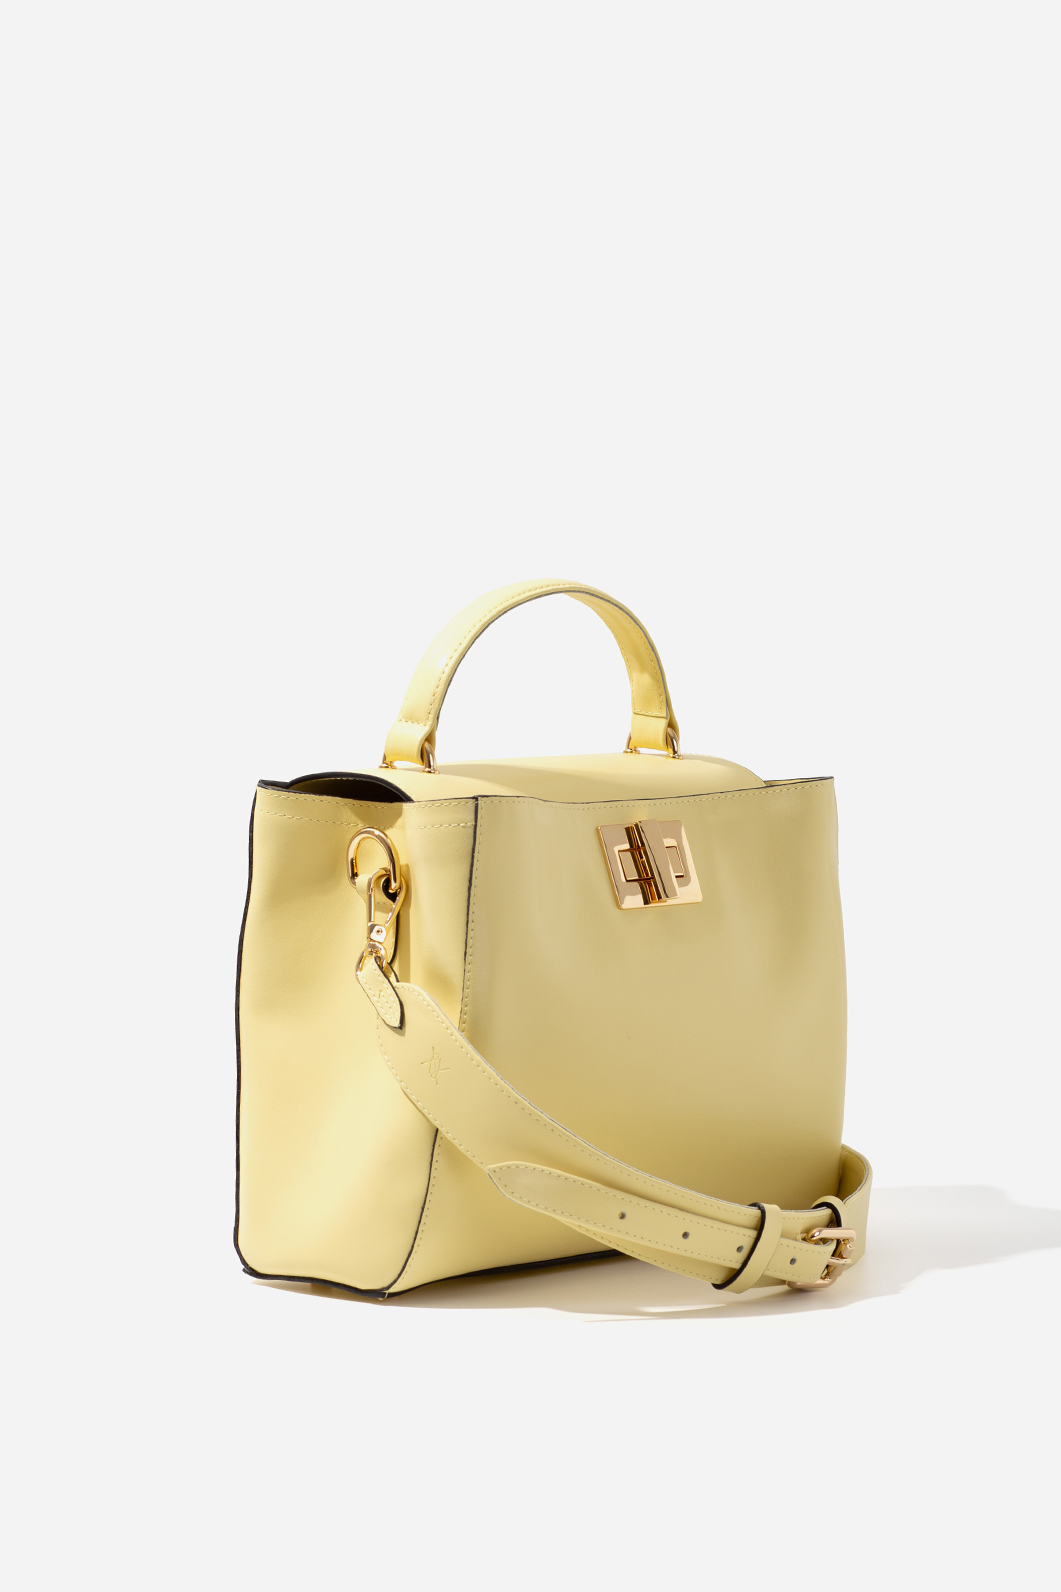 ERNA SOFT light yellow bag /gold/